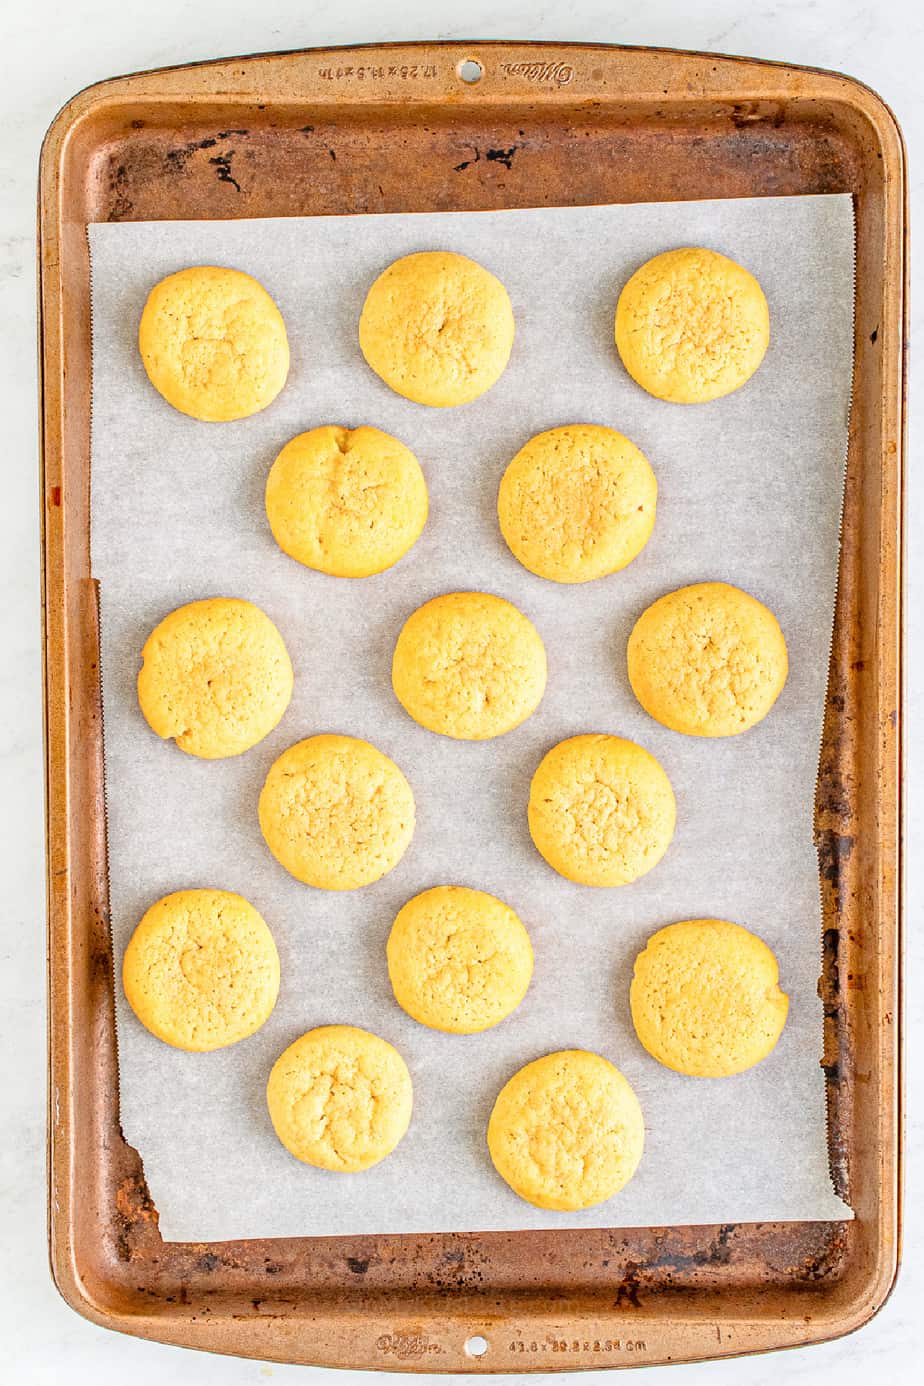 Baked Eggnog Cookies on pan